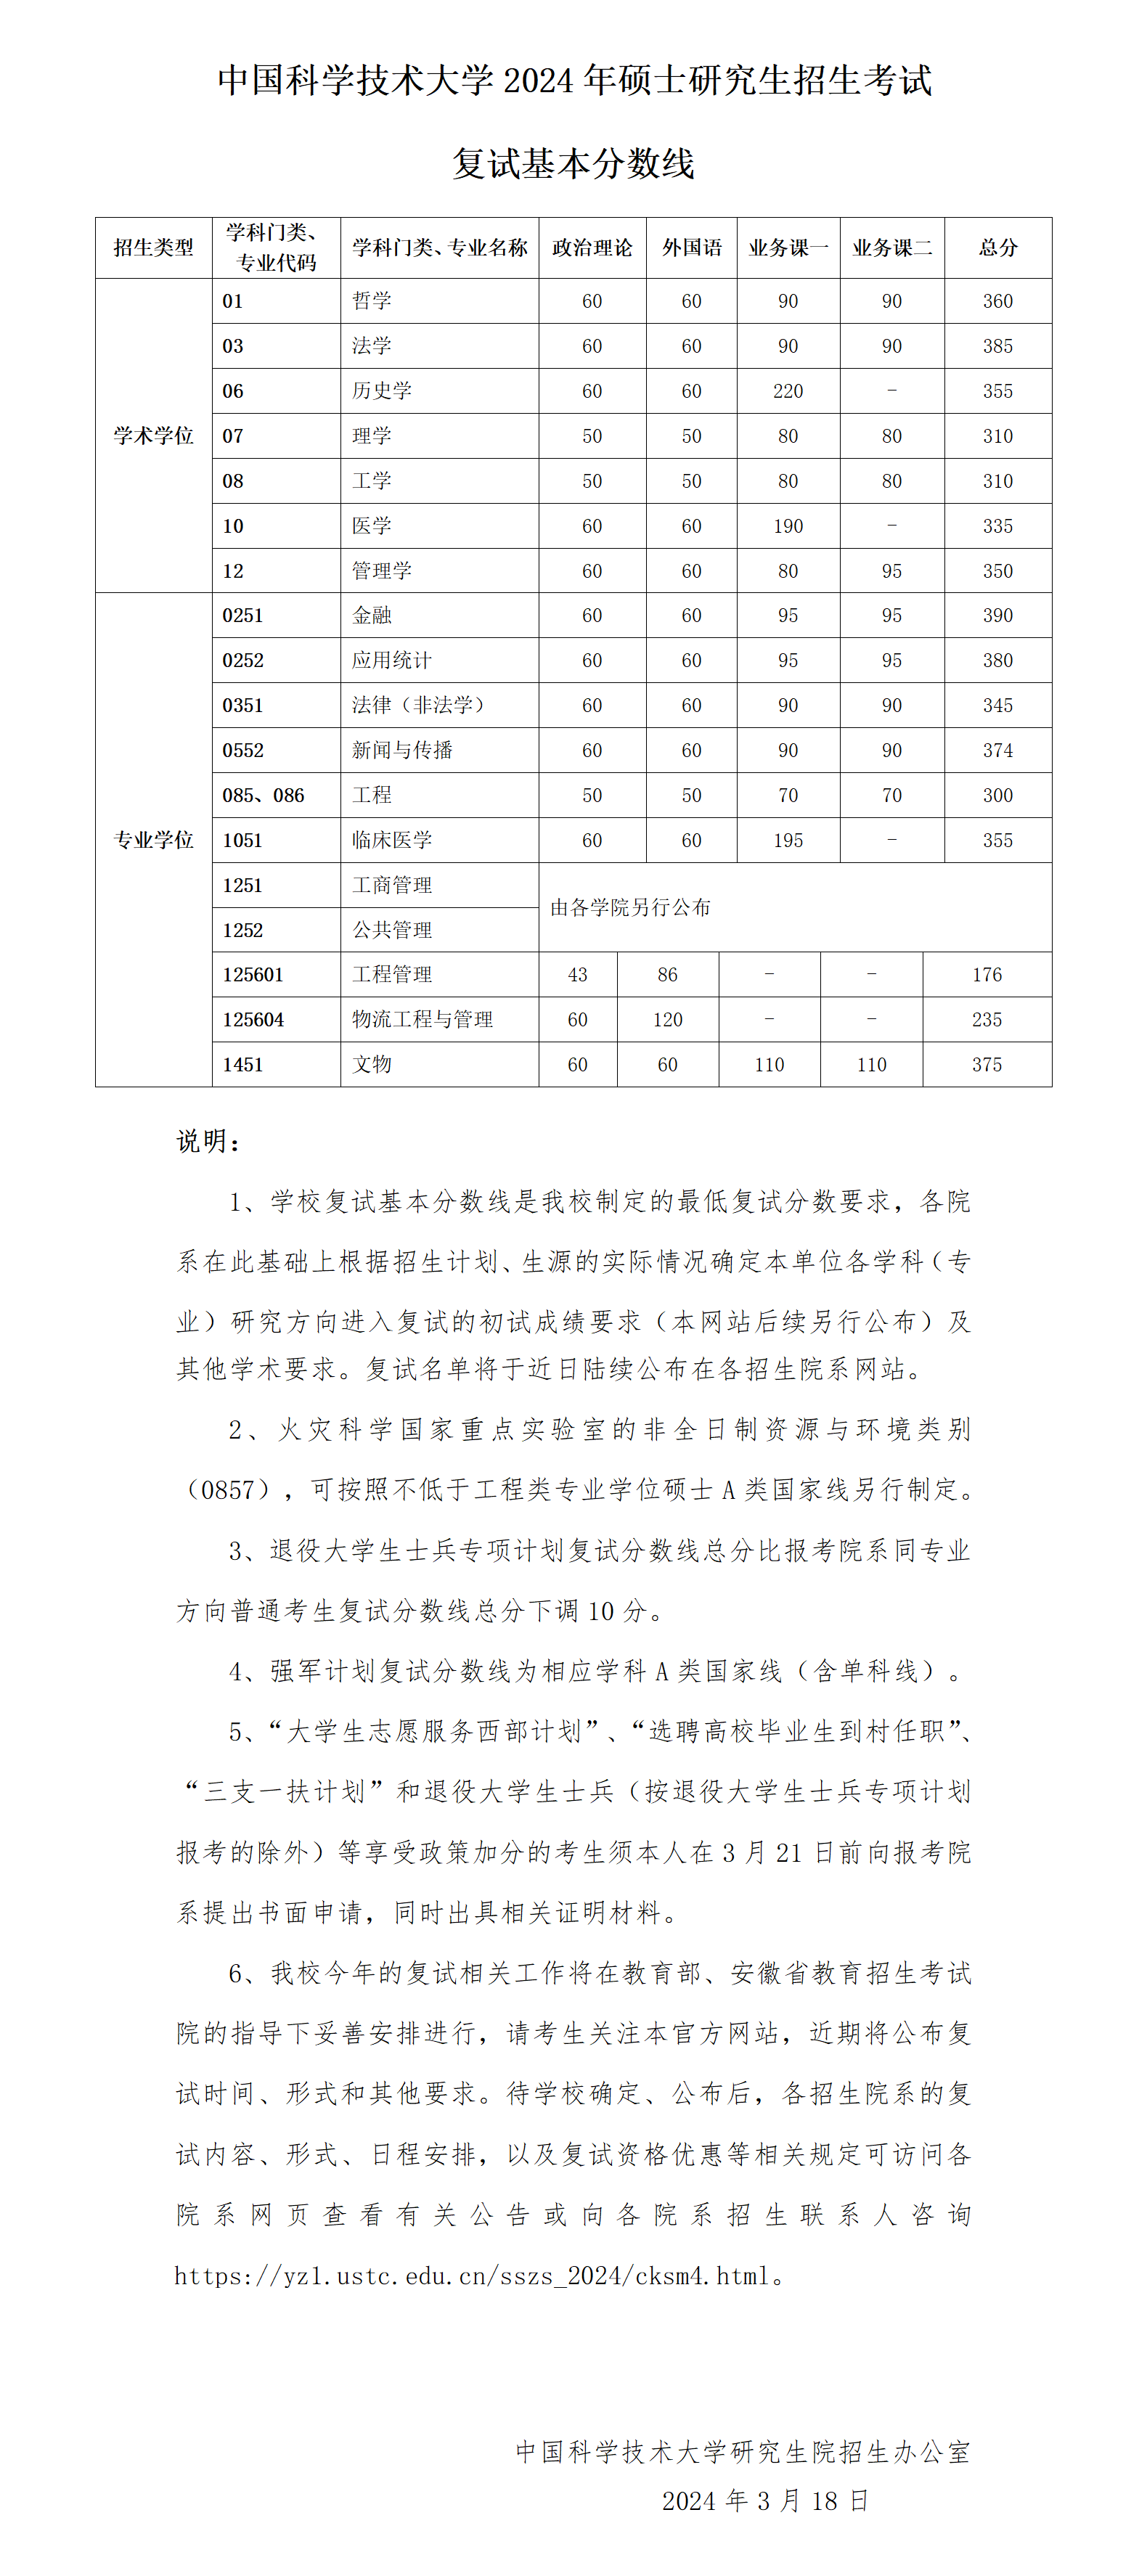 中国科学技术大学2024年考研复试分数线